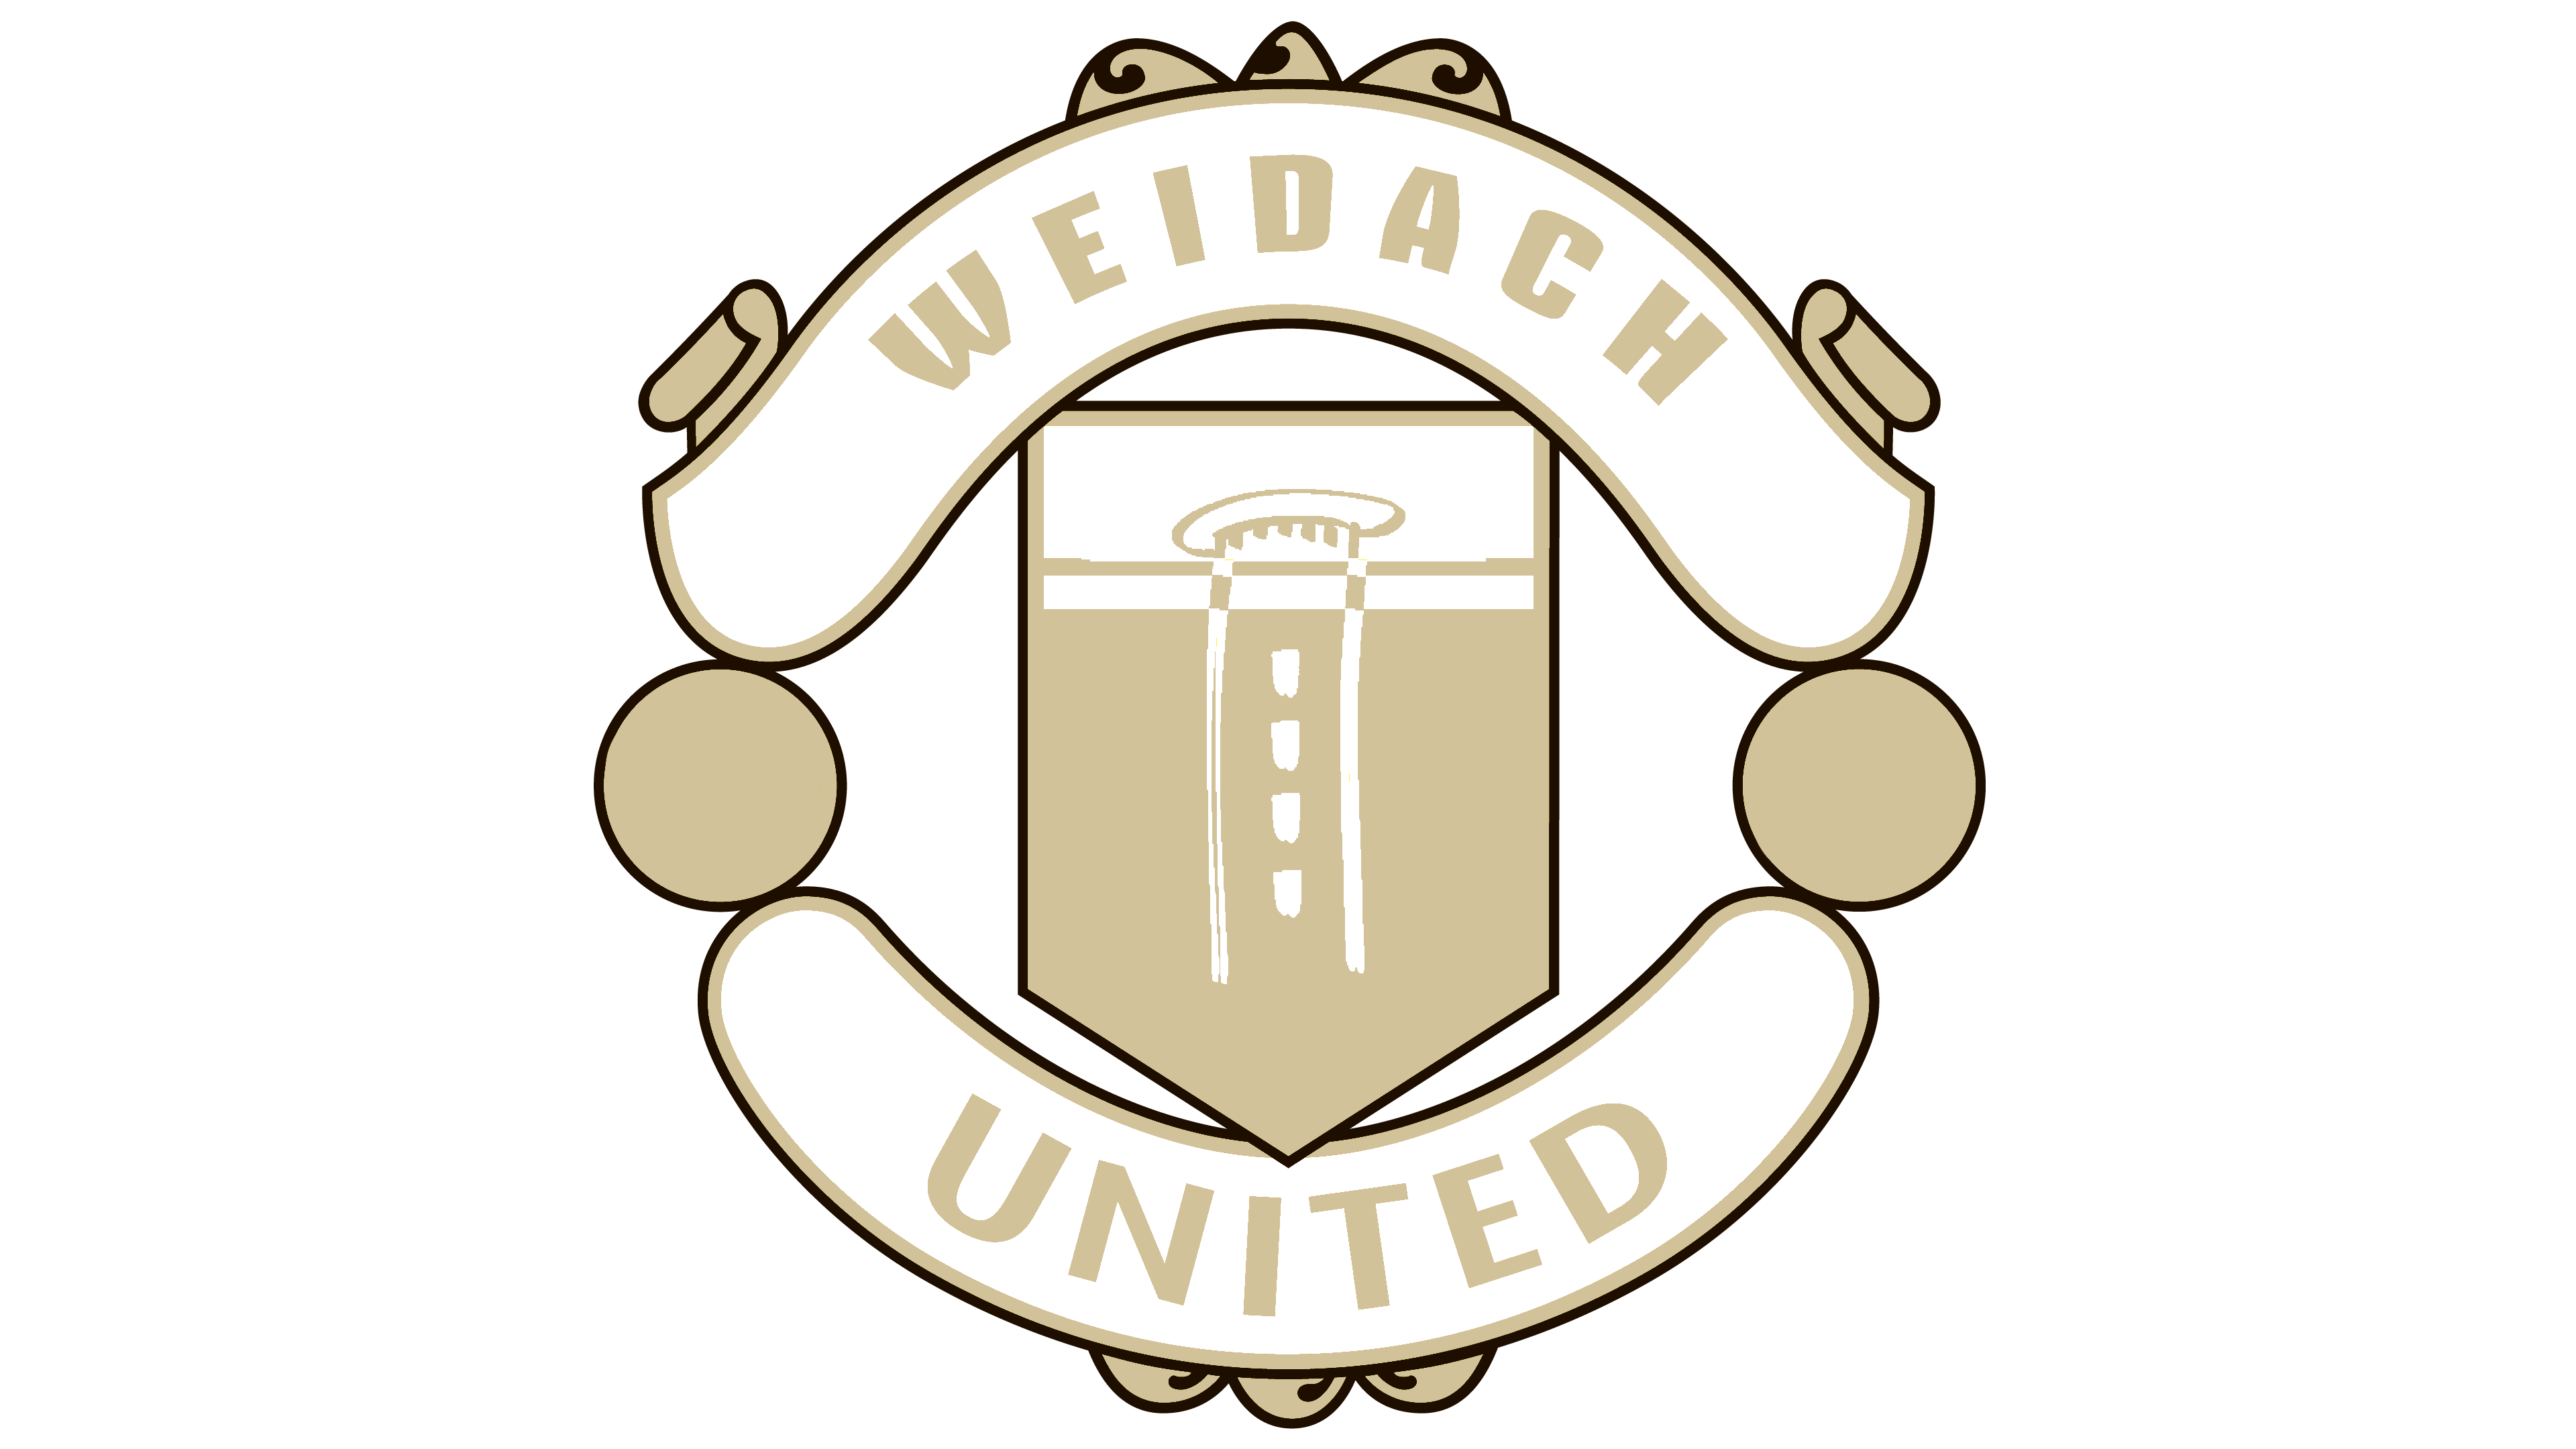 Weidach United